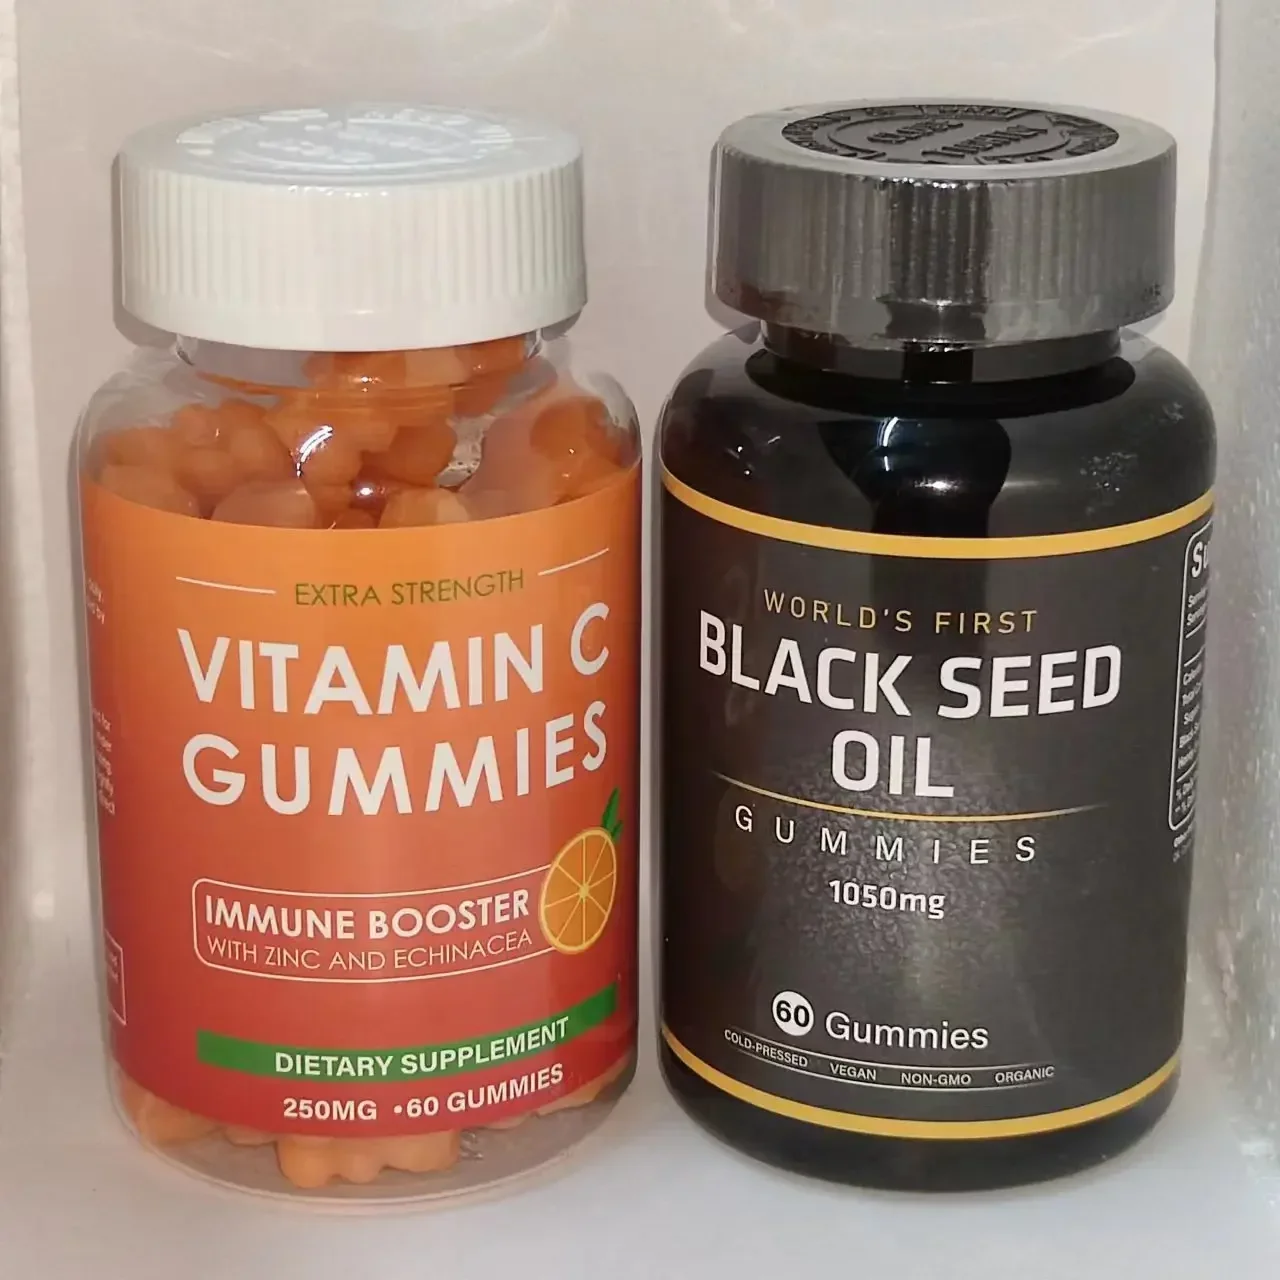 

1 бутылка жевательных резинок с витамином C + 1 бутылка черных семян, масло жевательных резинок, витамины из цинка, делает волосы богатыми витаминами, здоровыми